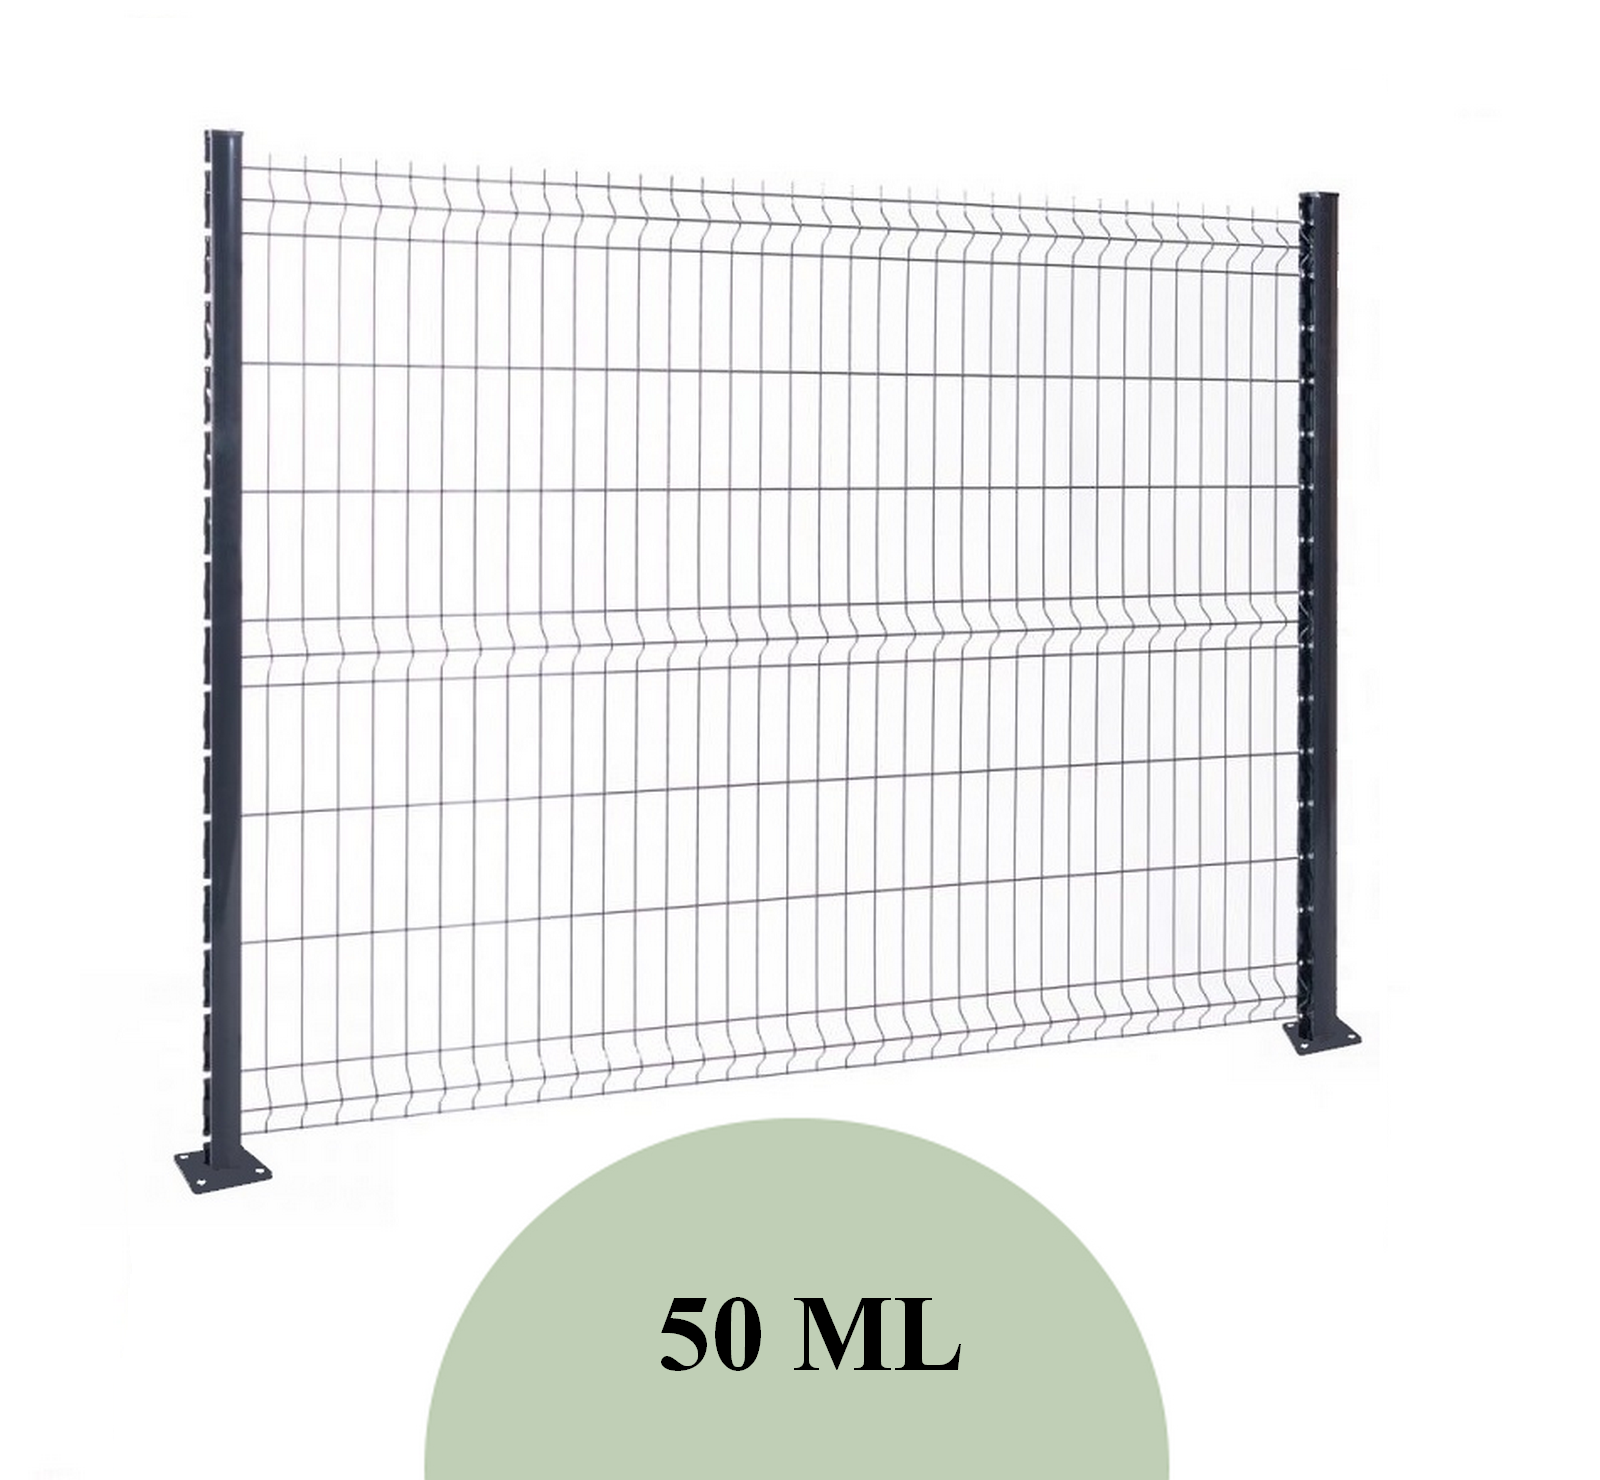 Kit 50 ML de grillage rigide sur platine - Maison de la clôture